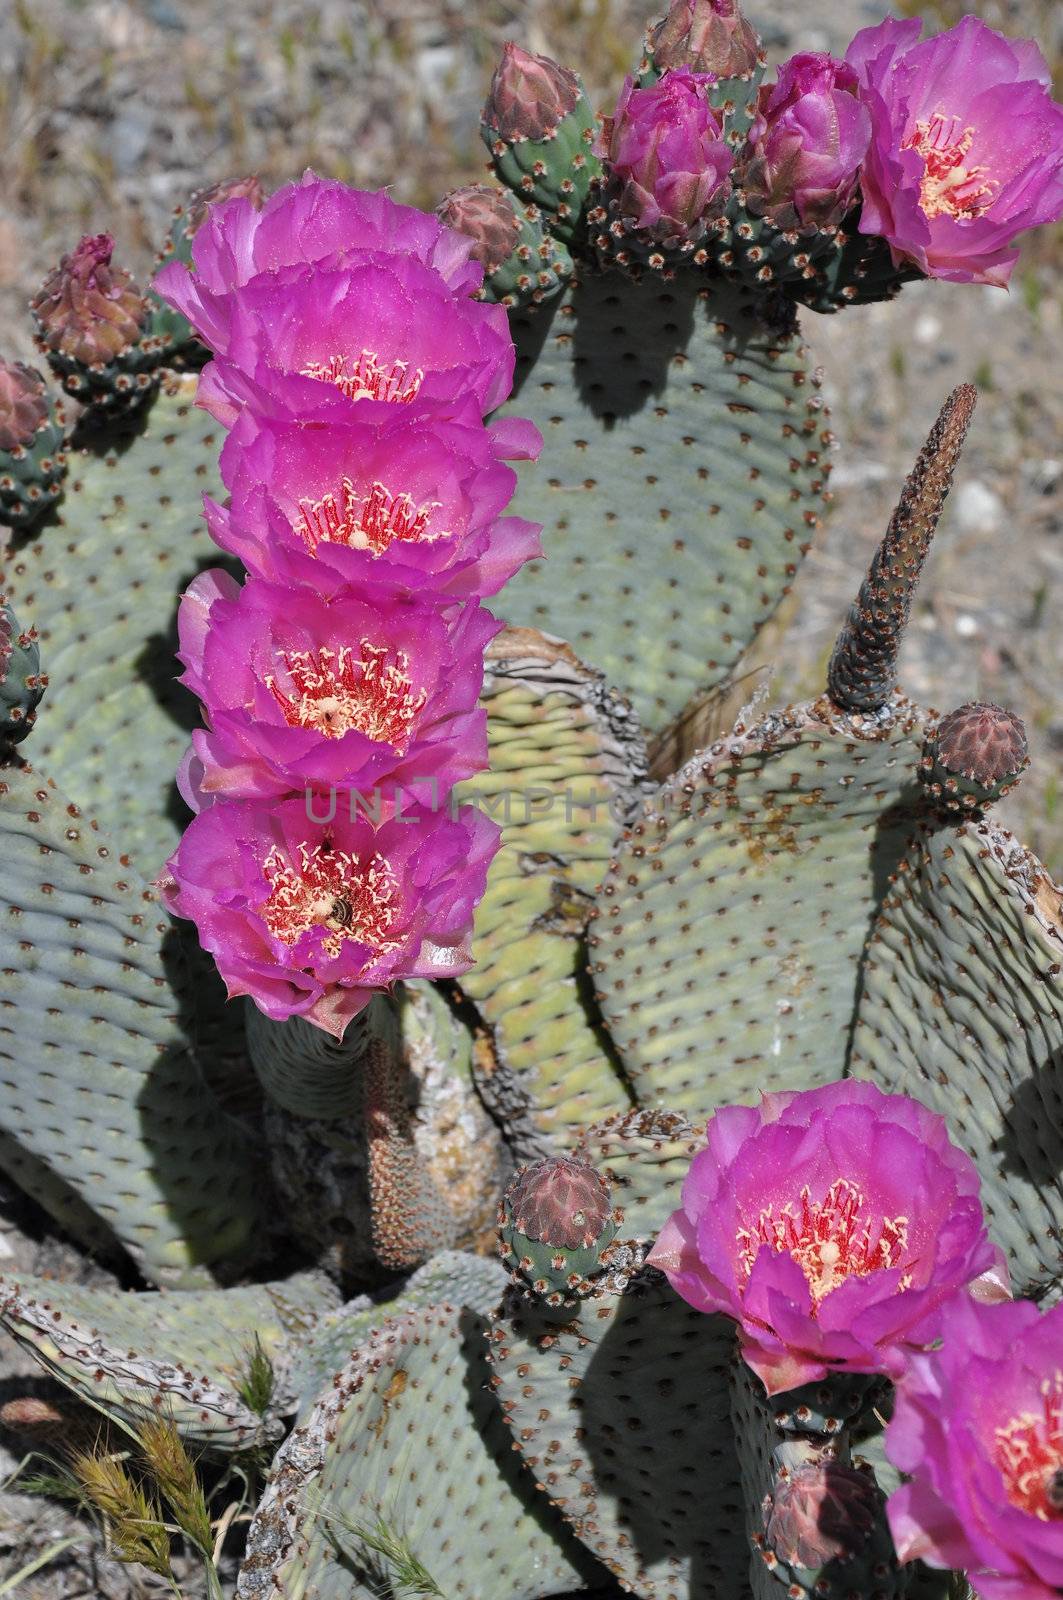 Flowering cactus by PJ1960